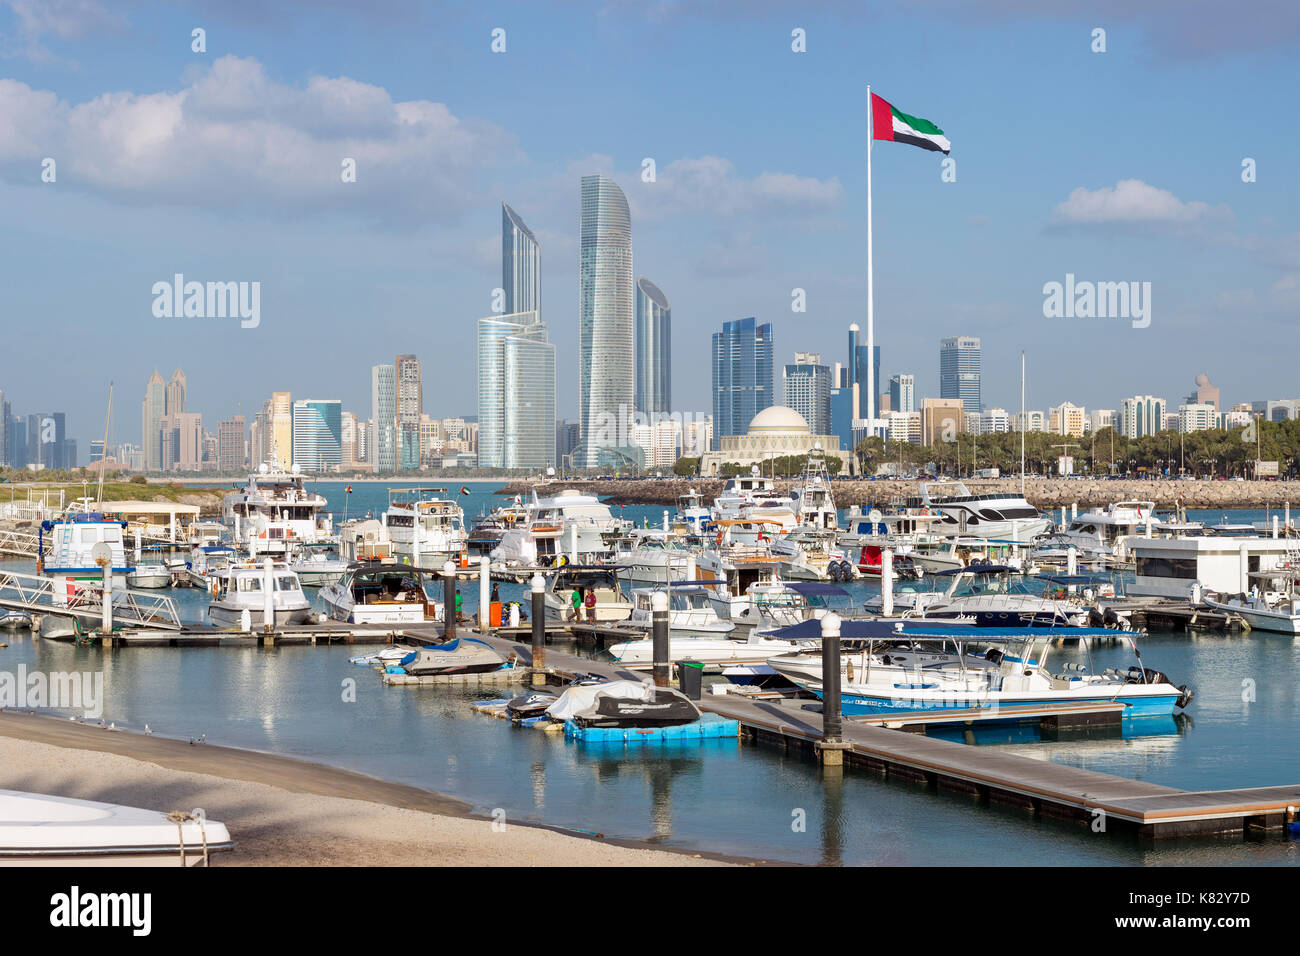 Ciudad moderna y a la Marina, en Abu Dhabi, Emiratos Árabes Unidos, EAU Foto de stock